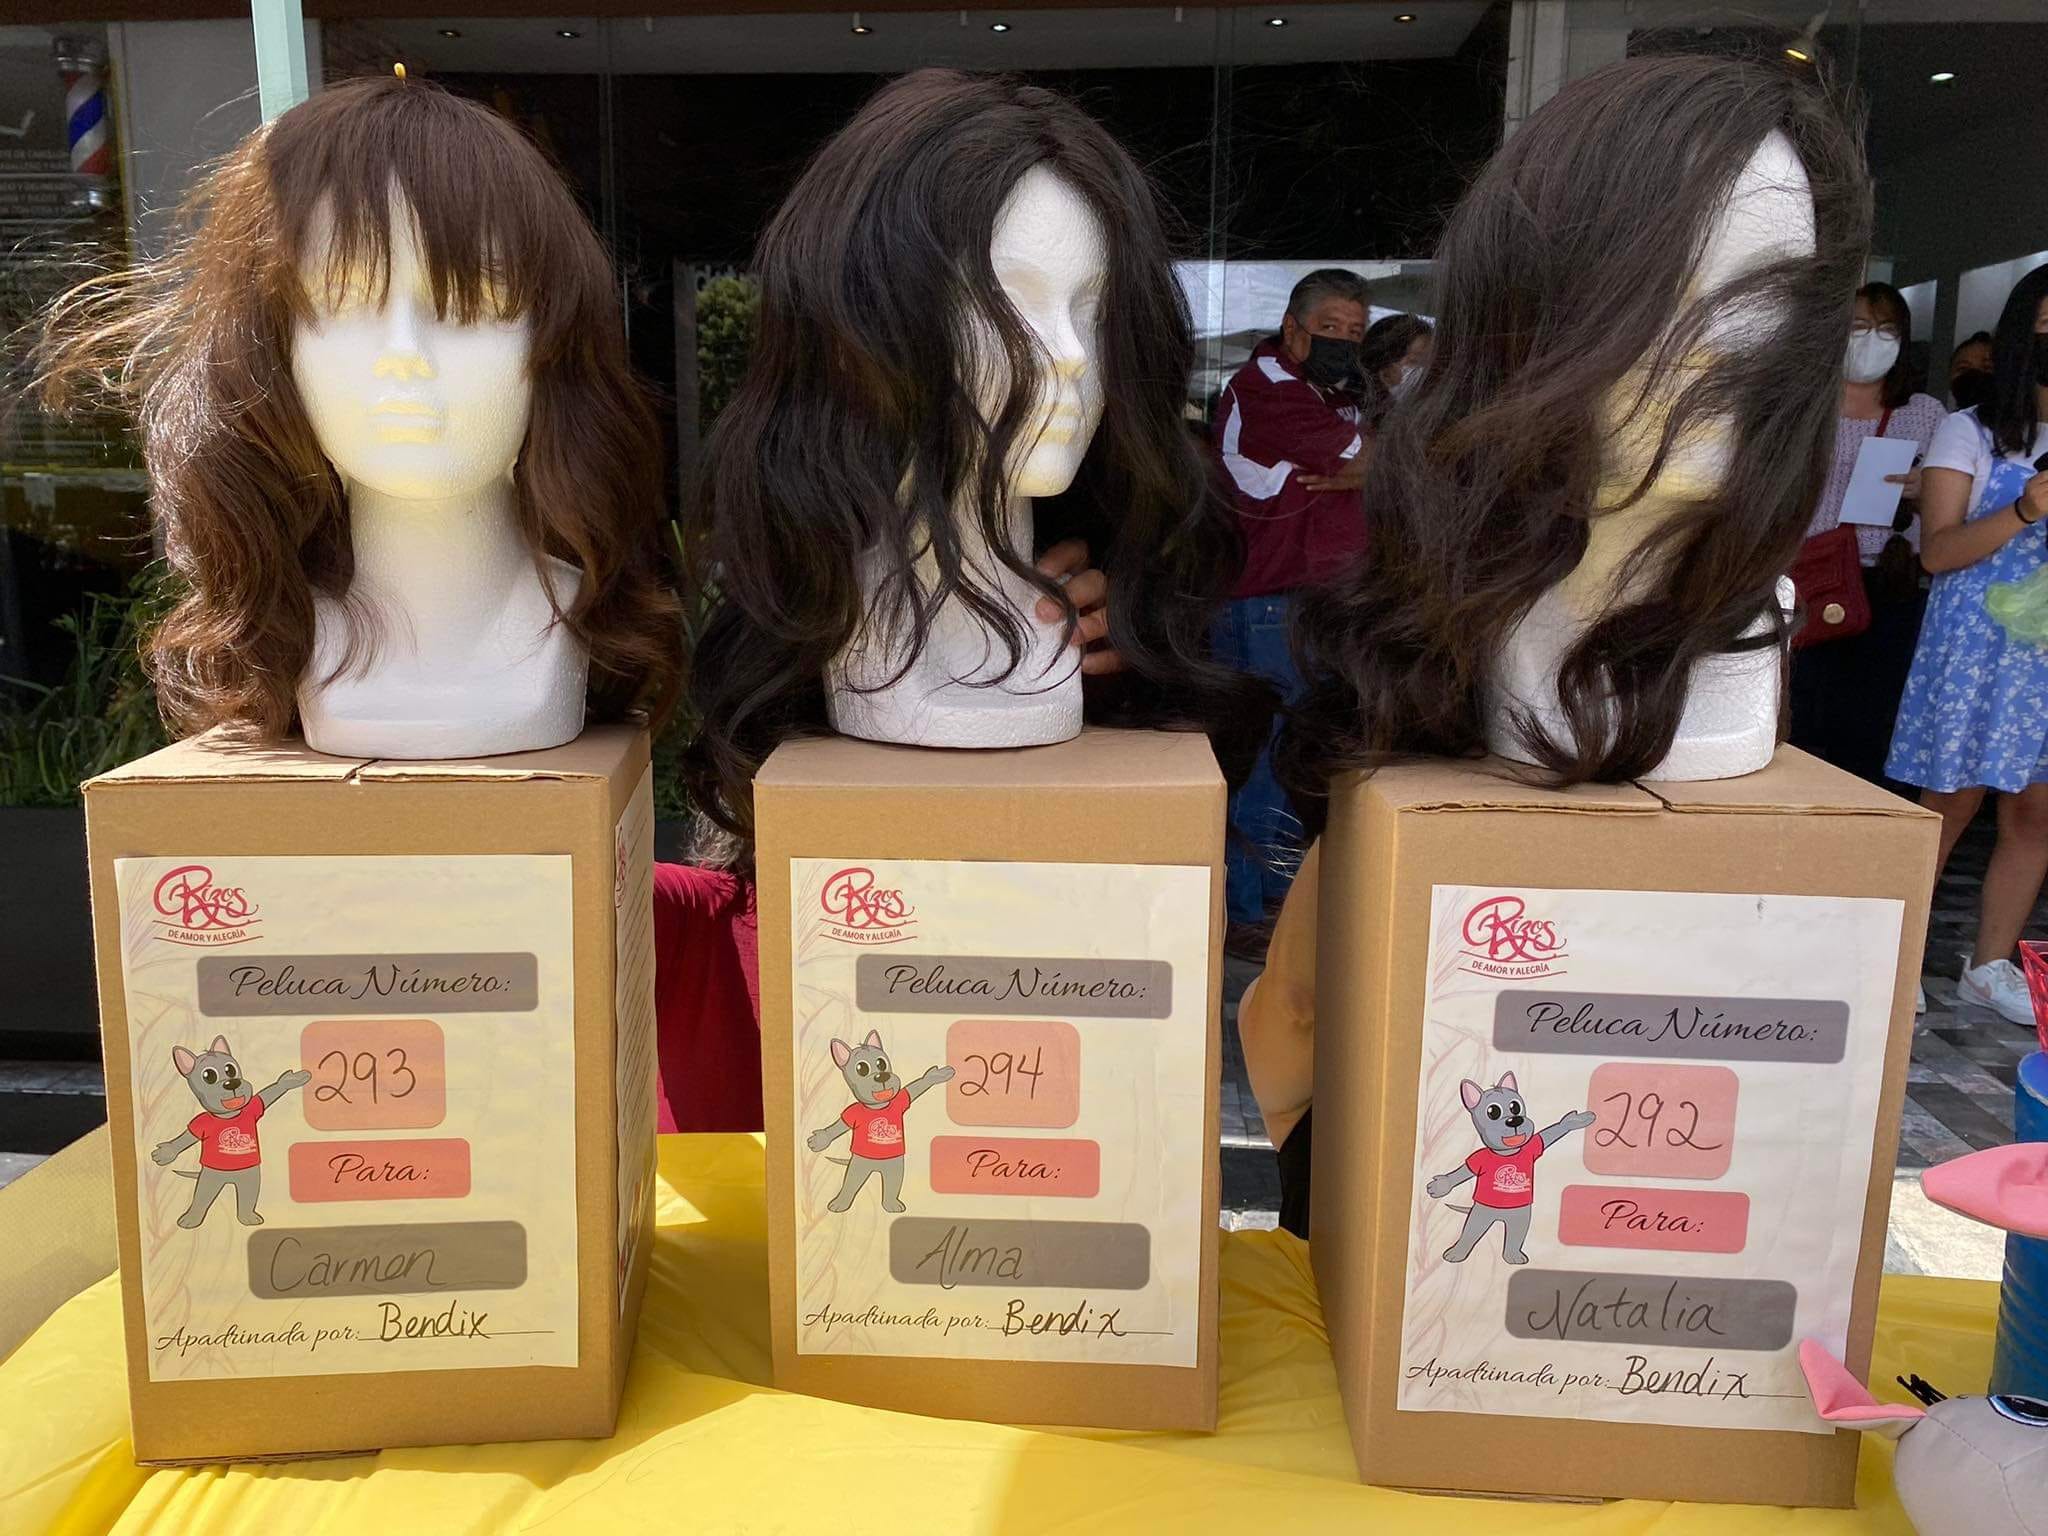 Patrocinio o donadores anónimos ayudan a financiar la elaboración de pelucas oncológicas.